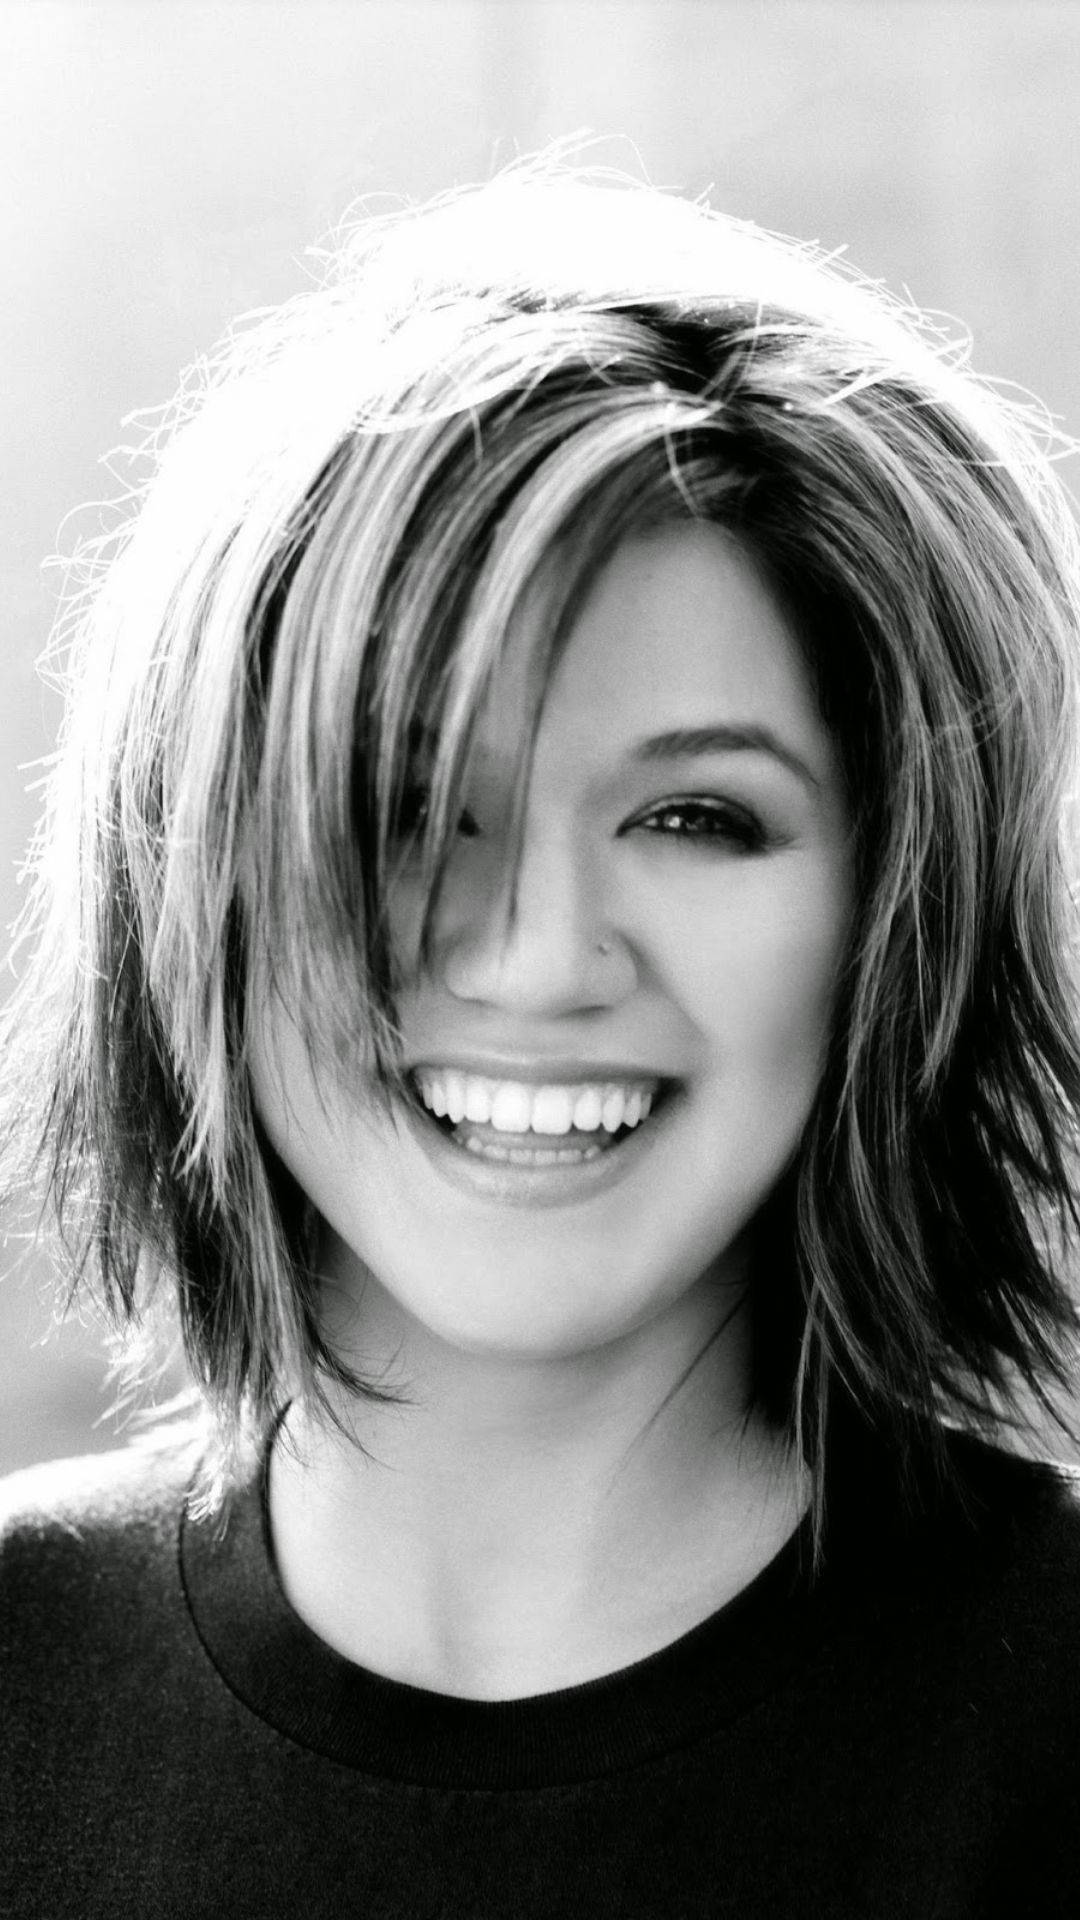 Kelly Clarkson Precious Smile Background